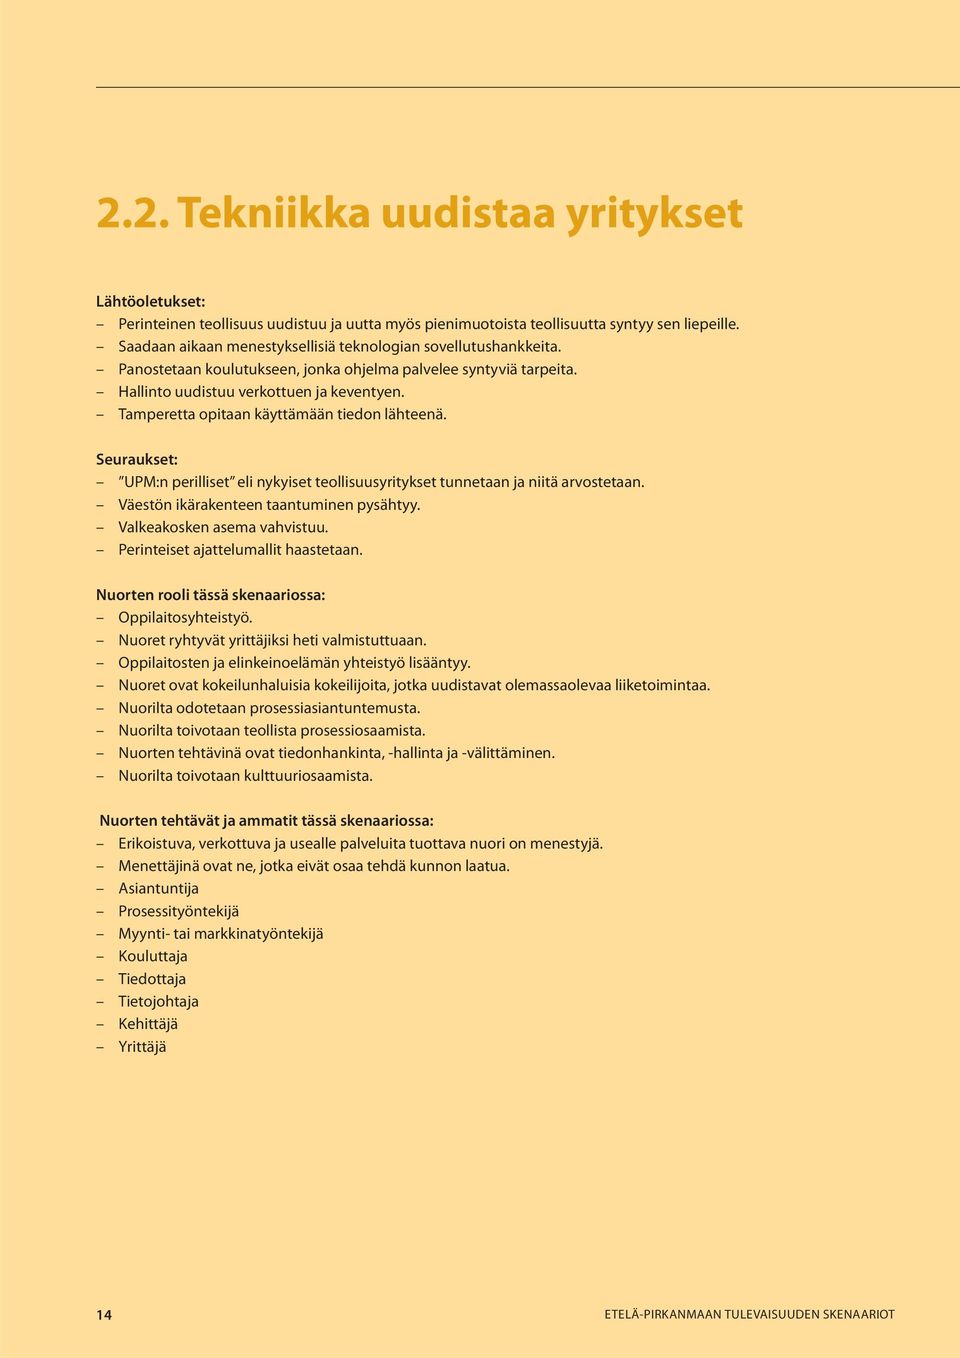 Tamperetta opitaan käyttämään tiedon lähteenä. Seuraukset: UPM:n perilliset eli nykyiset teollisuusyritykset tunnetaan ja niitä arvostetaan. Väestön ikärakenteen taantuminen pysähtyy.